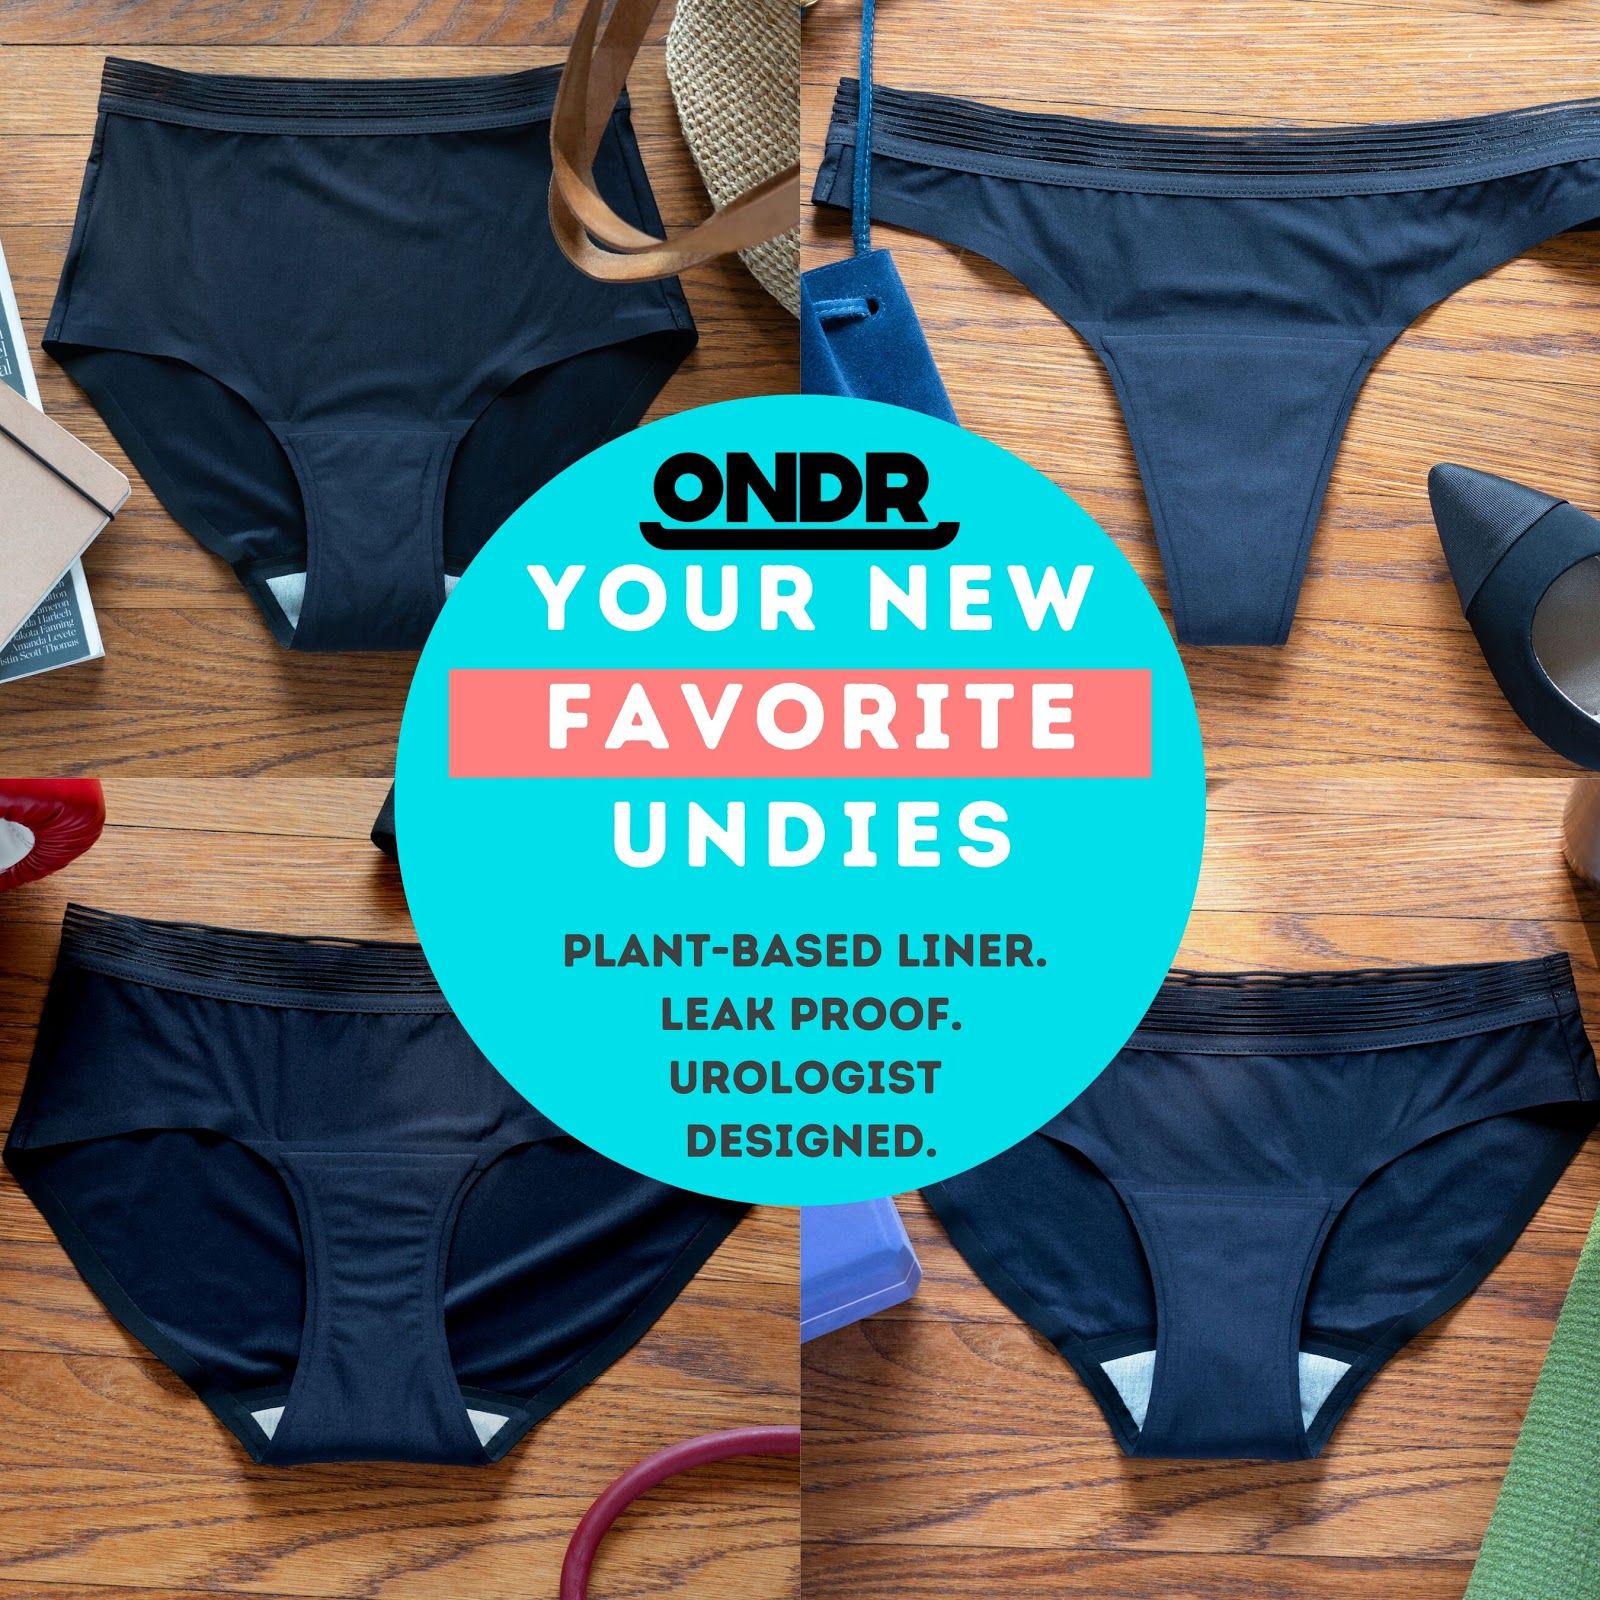 ONDRwear undies